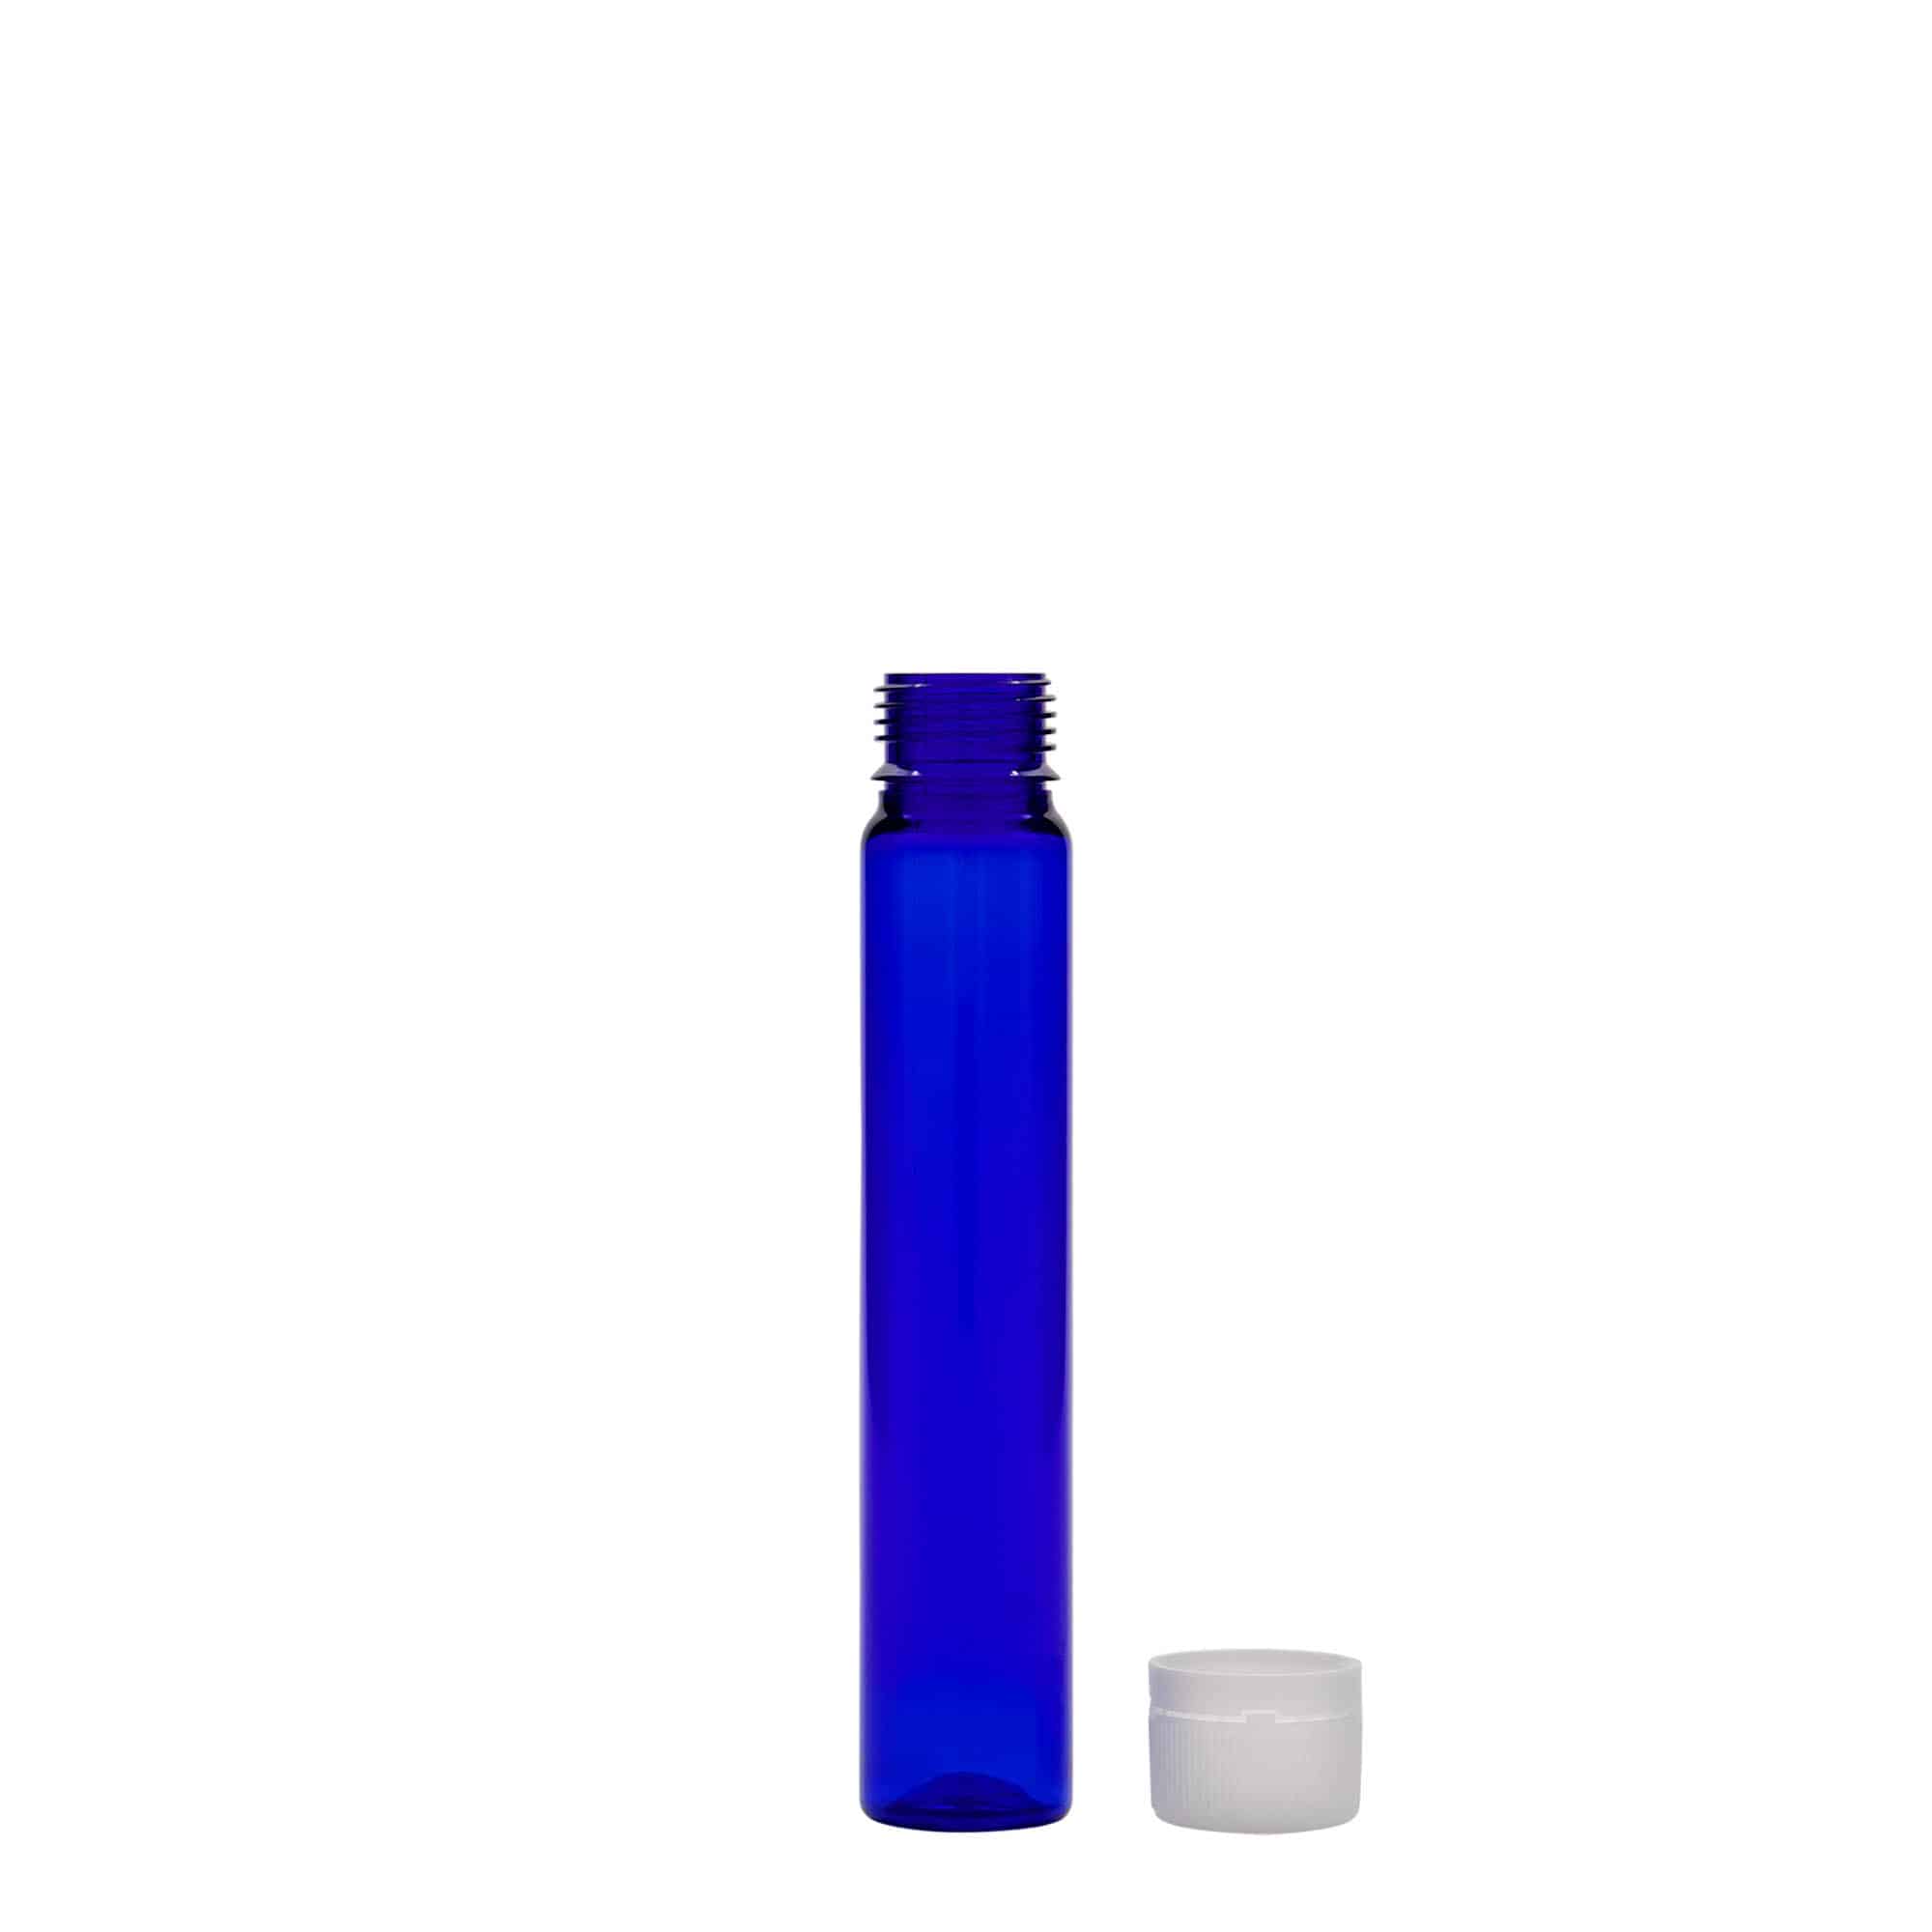 PET trubička 25 ml, plast, královská modř, uzávěr: šroubovací uzávěr